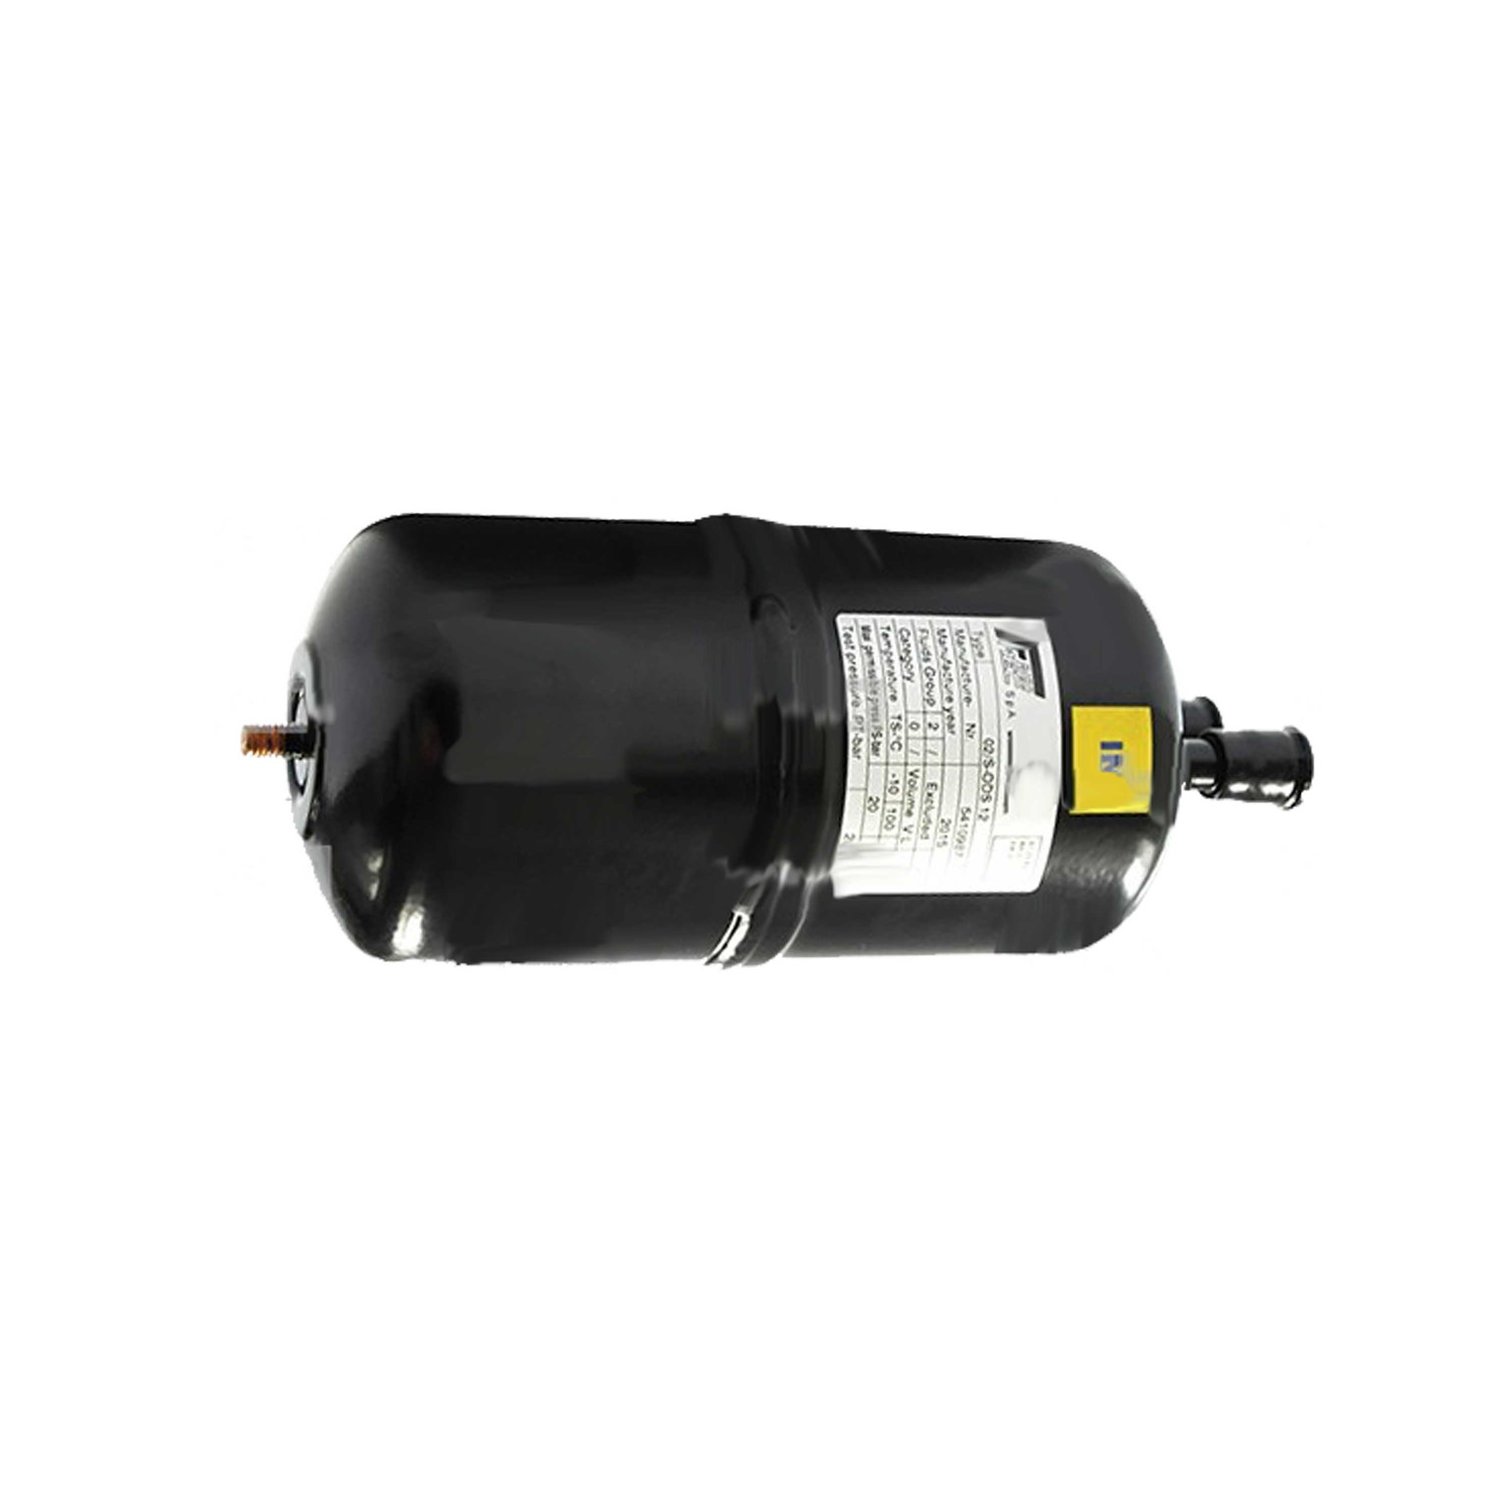 Separador de líquidos Frigomec 06 / S 28 mm, volumen: 4,6 l, conexión: 28 mm ODS